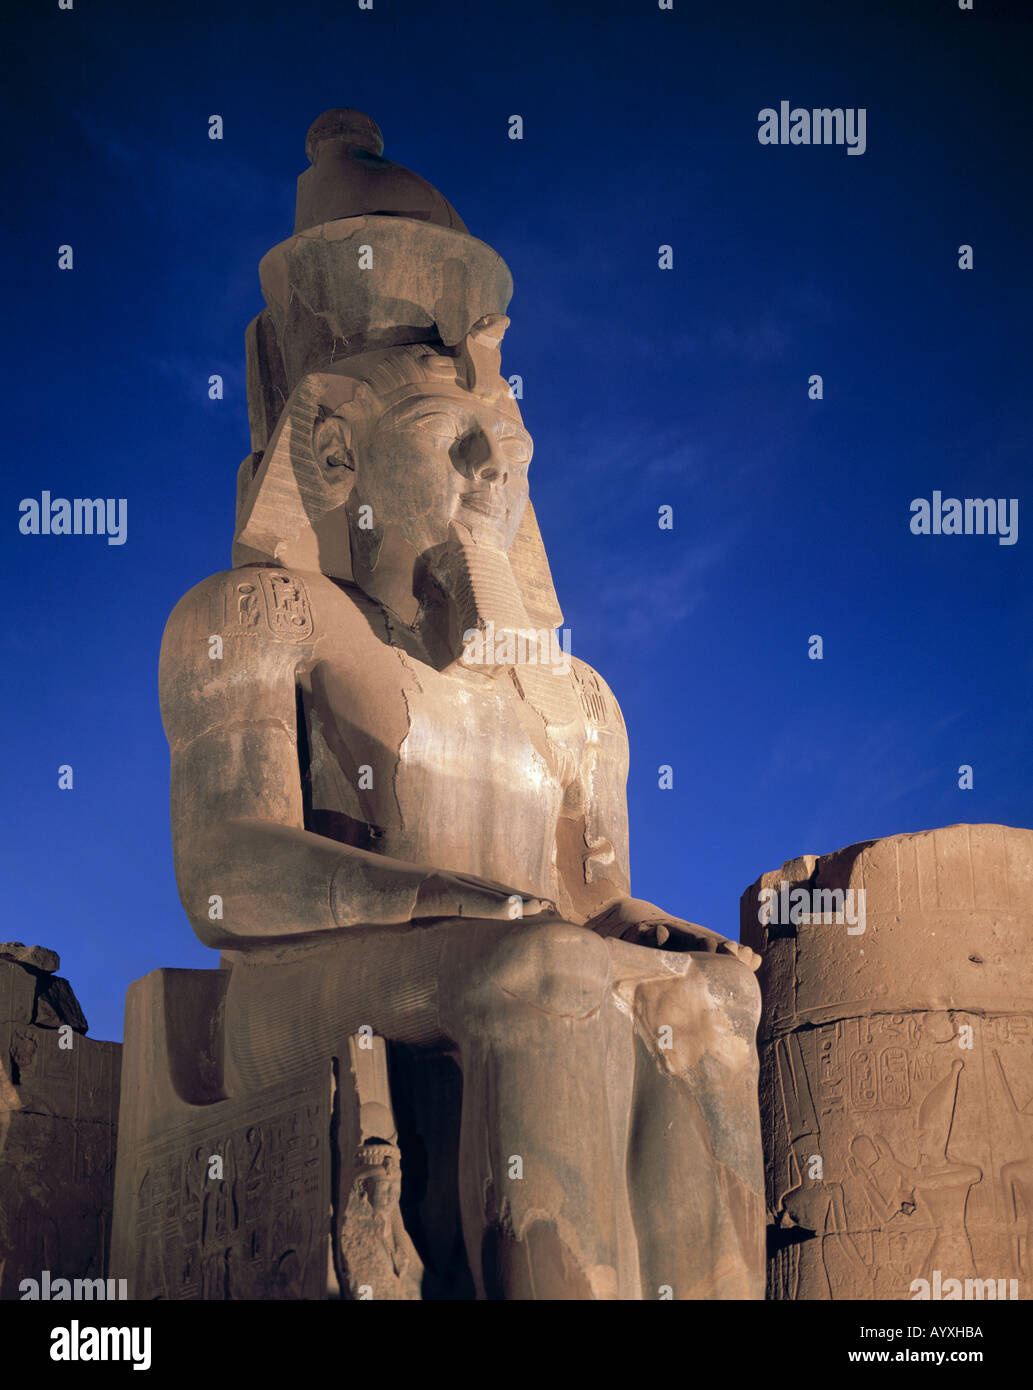 beleuchtete Statue Ramses II in Luxor, Aegypten Stock Photo